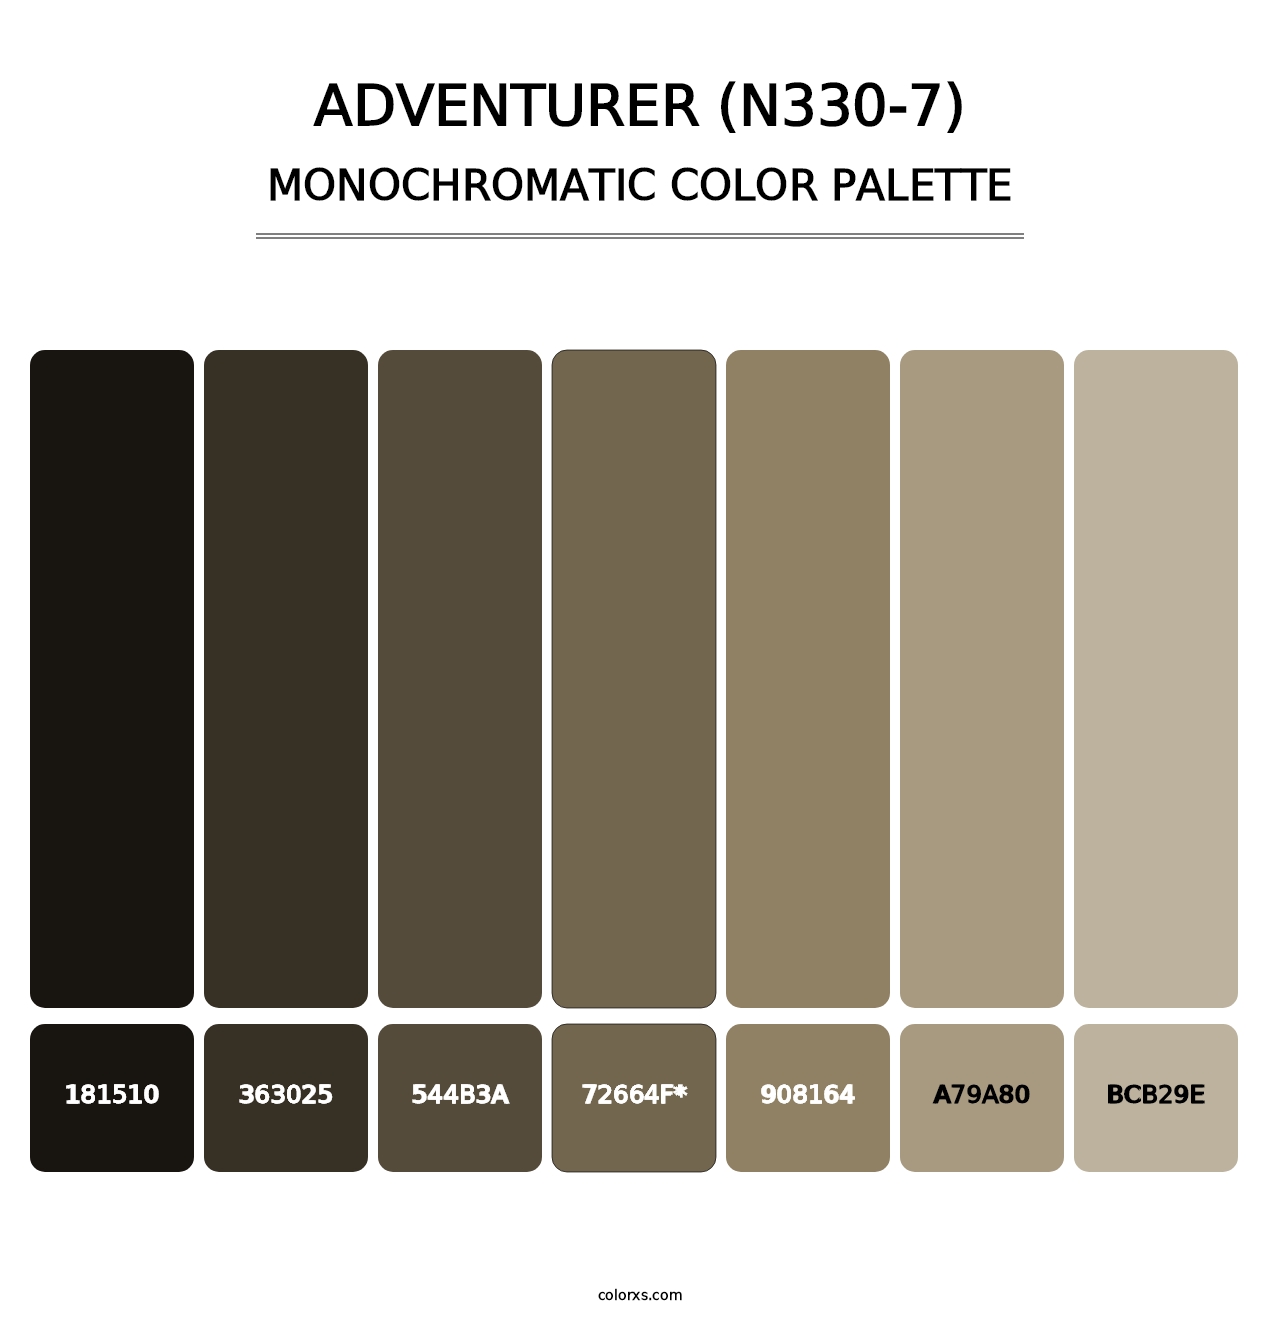 Adventurer (N330-7) - Monochromatic Color Palette